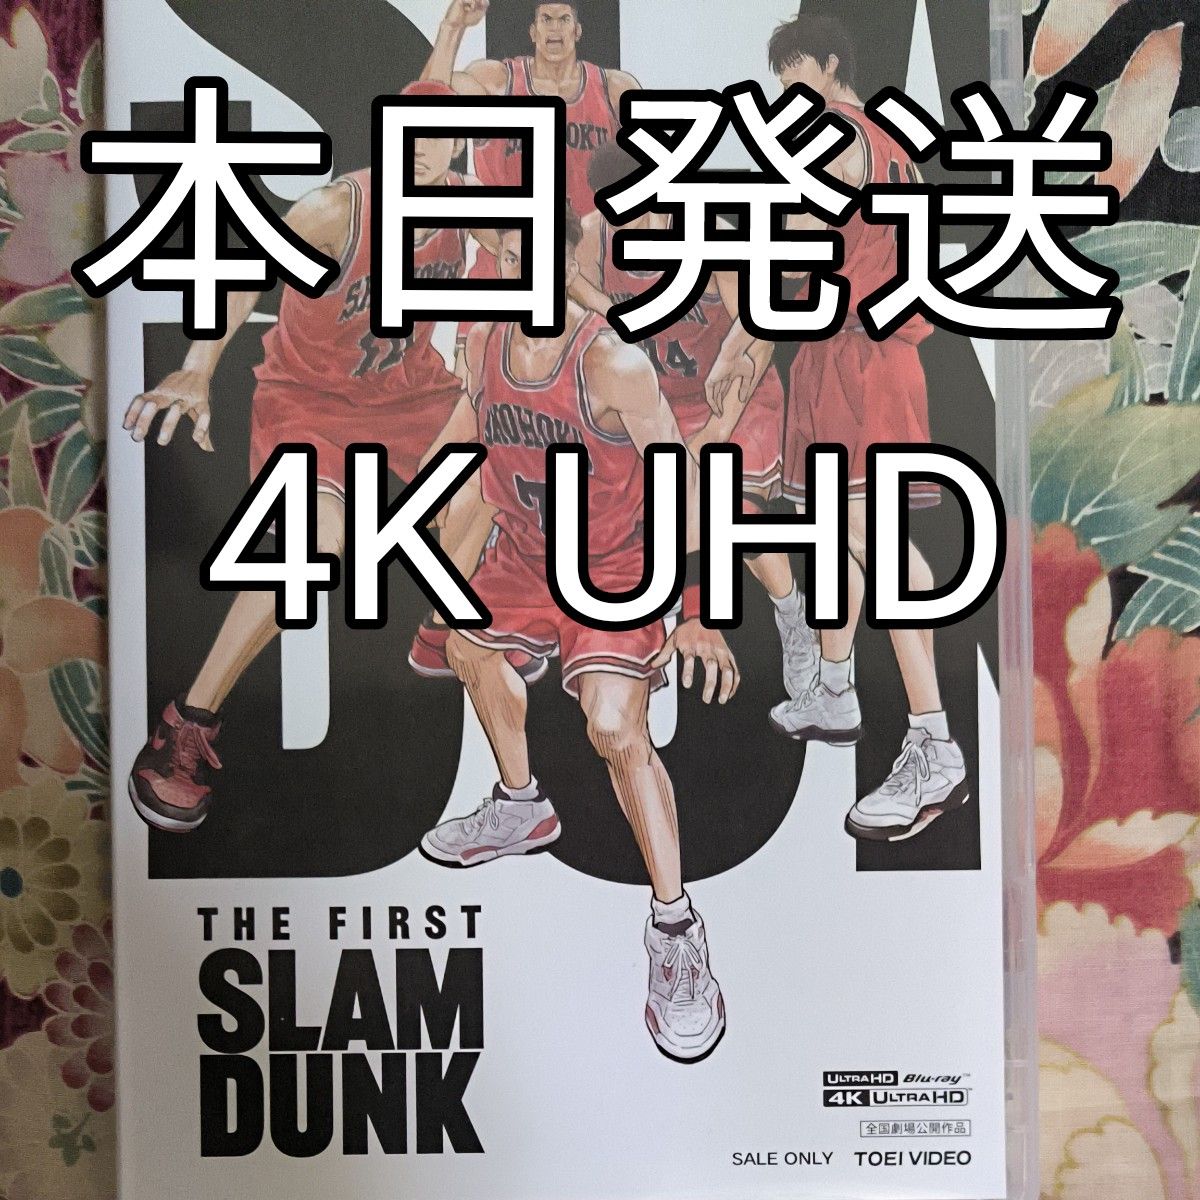 スラムダンク ブルーレイ 4K ULTRA HD Blu-ray  THE FIRST SLAM DUNK